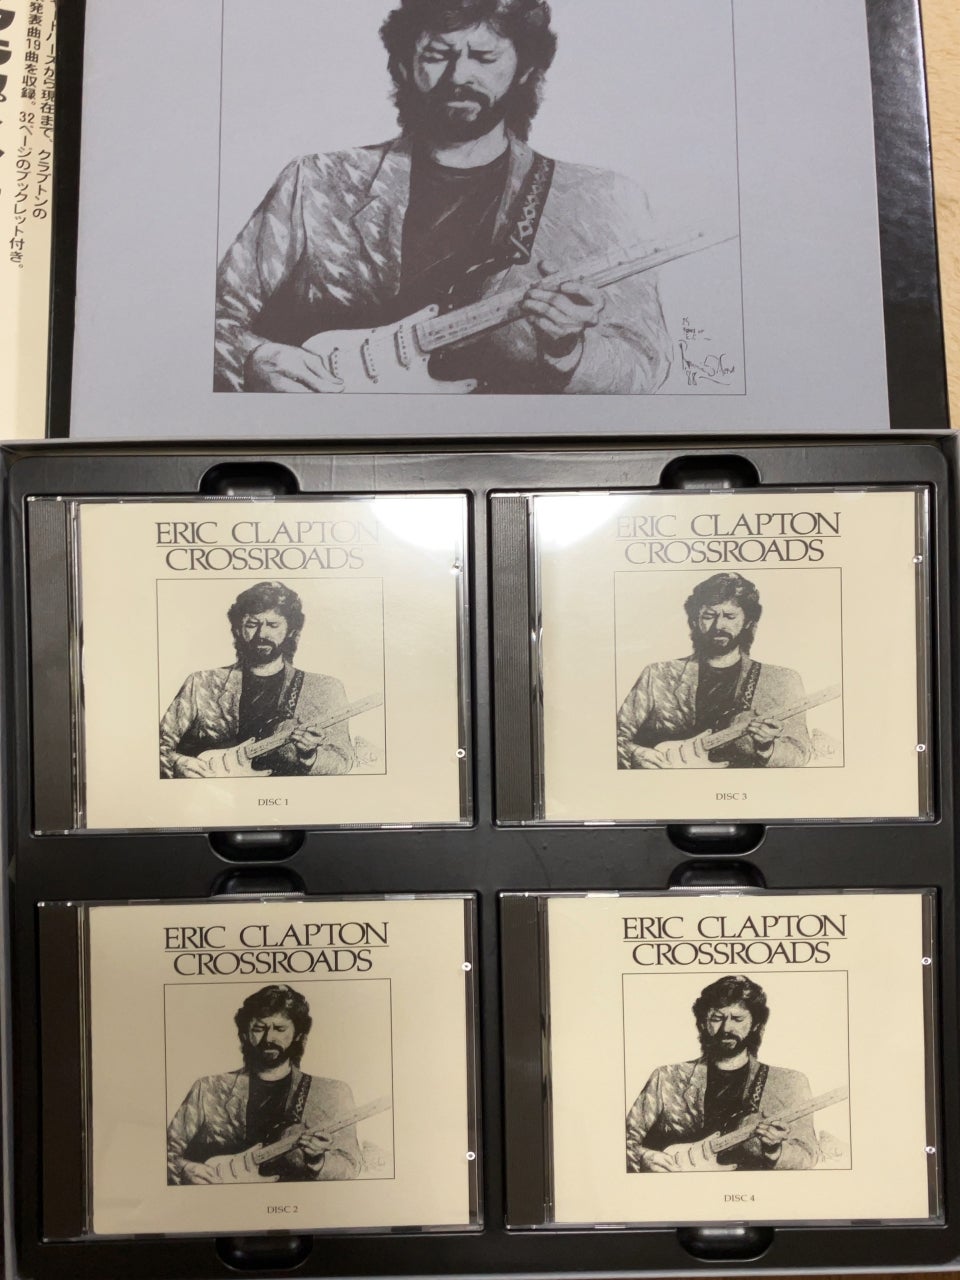 エリック・クラプトン『Crossroads』4CD Box set in 1988 | Music and